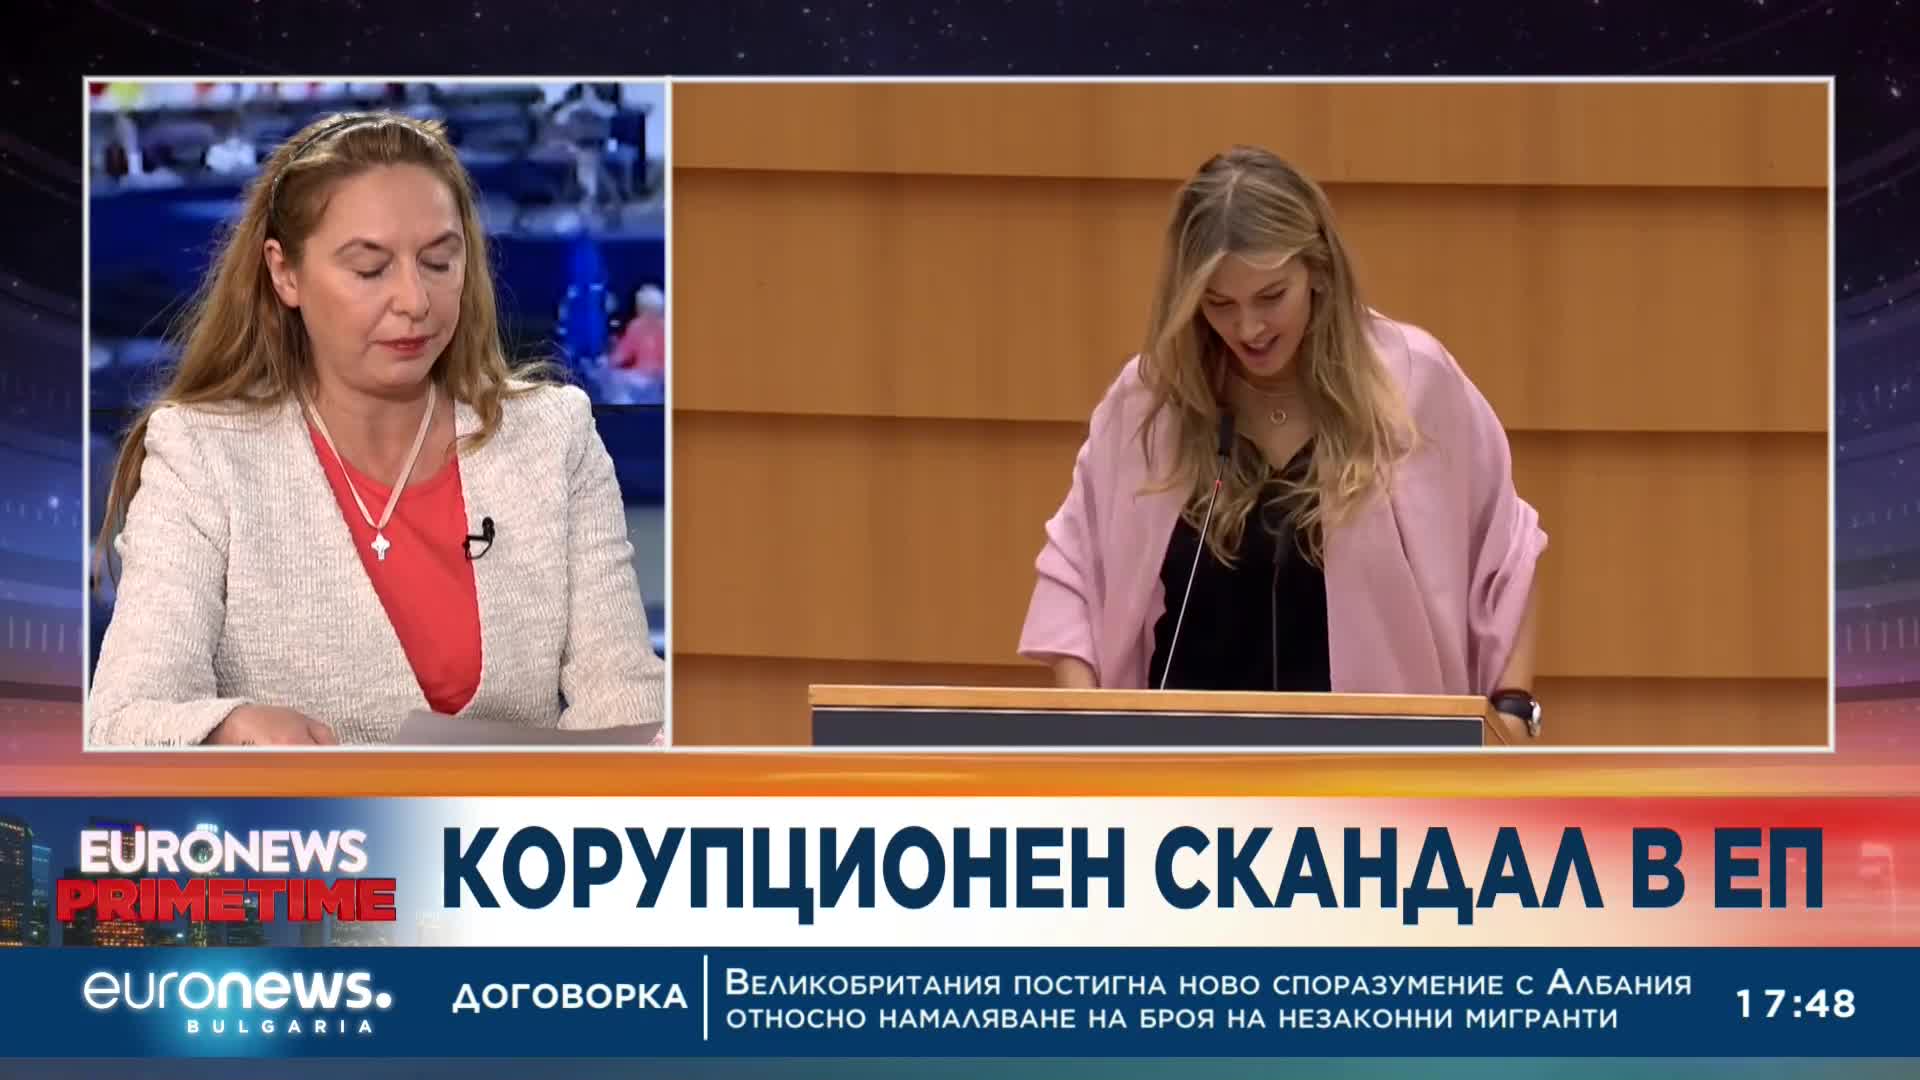 Окончателно: Евродепутатите отстраниха Ева Кайли като зам.-председател на ЕП